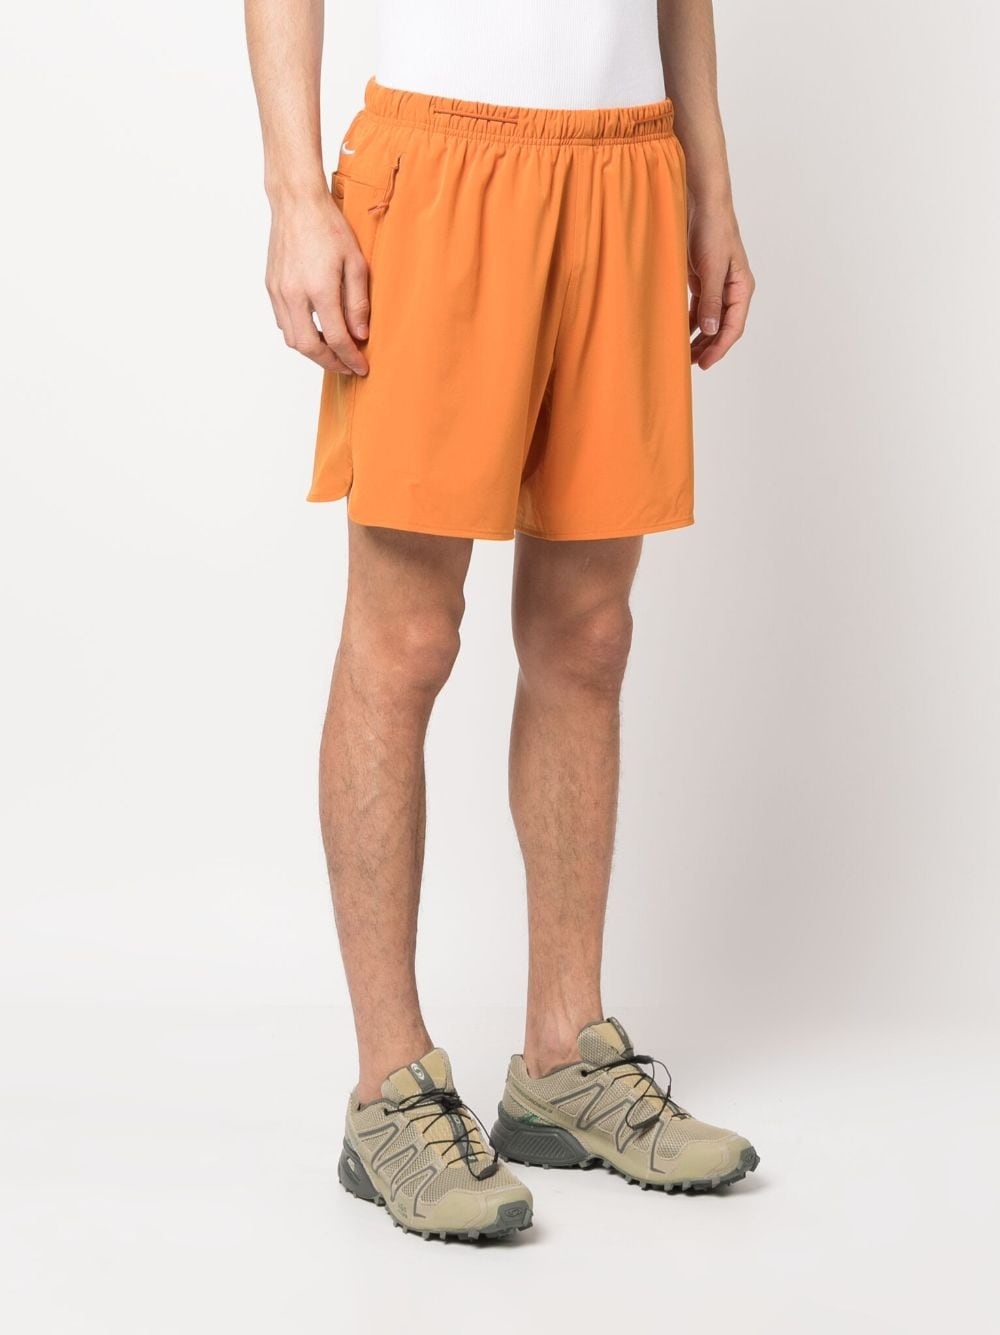 Acg dri-fit shorts - 2